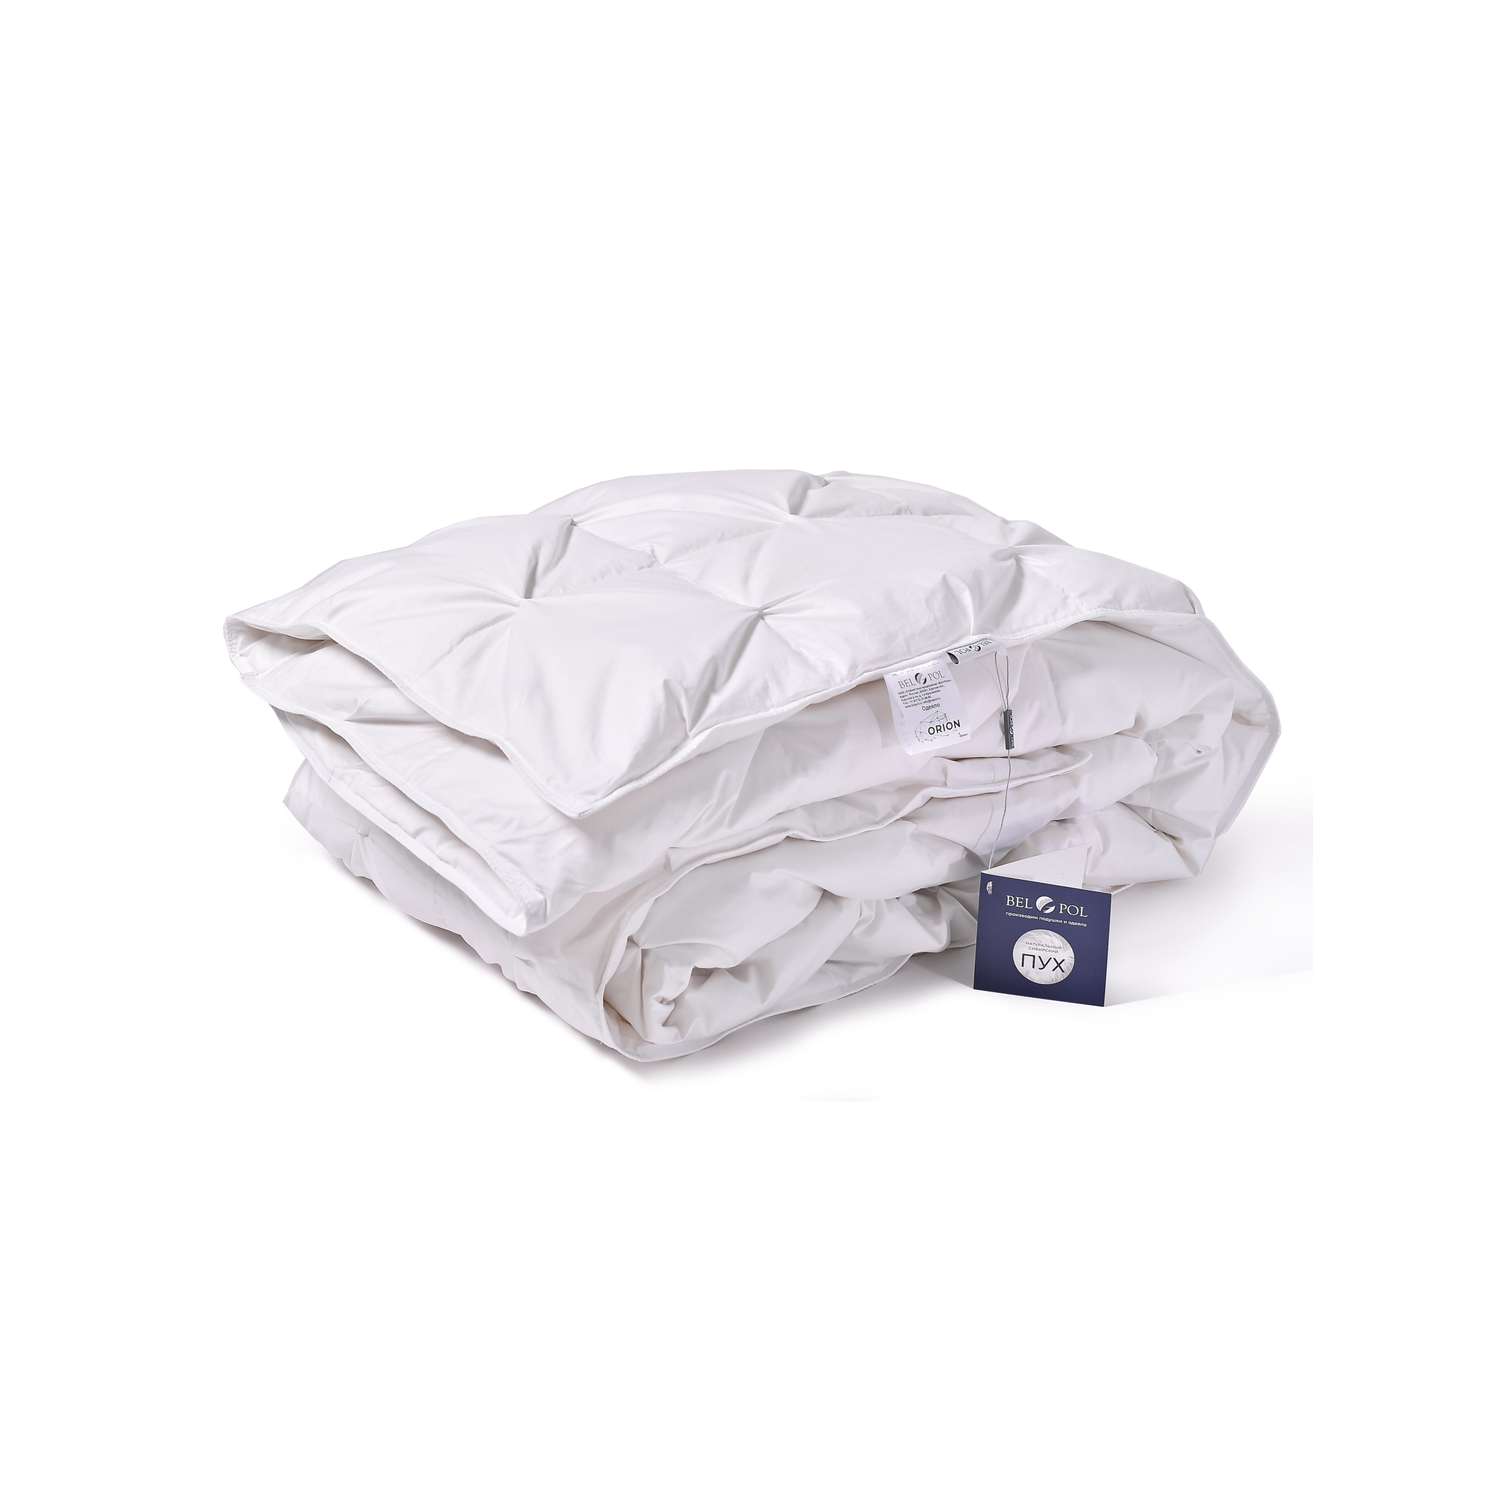 Одеяло BelPol пуховое BP ORION белый 200х220 буфы - фото 2